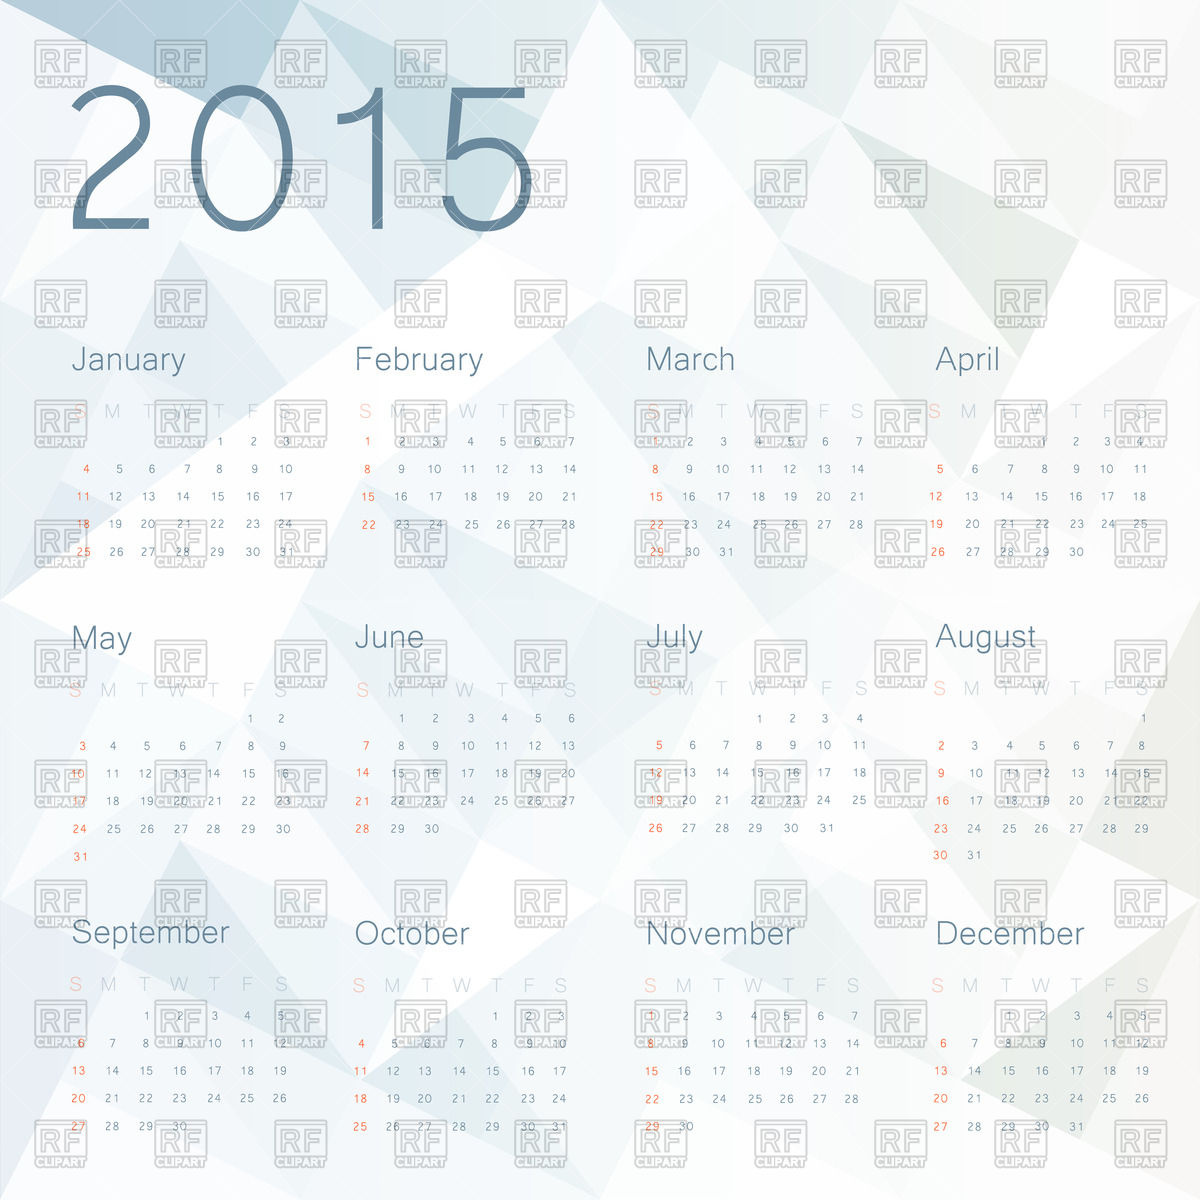 Calendar 2015 Mathrubhumi Pdfnew Calendar Template Site   New Calendar    